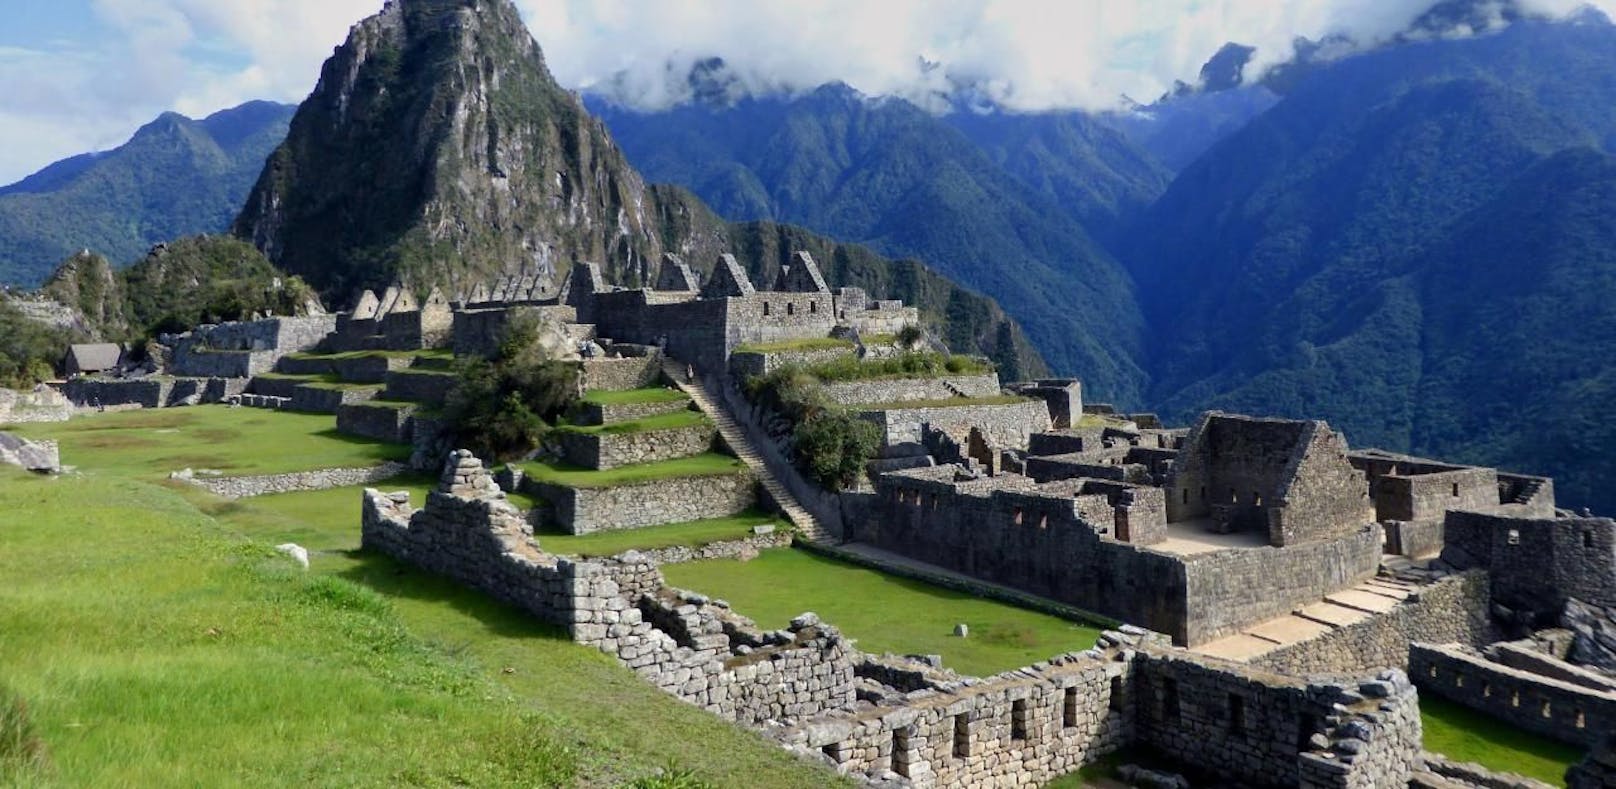 Nackerbatzerl sind am Machu Picchu nicht willkommen. 